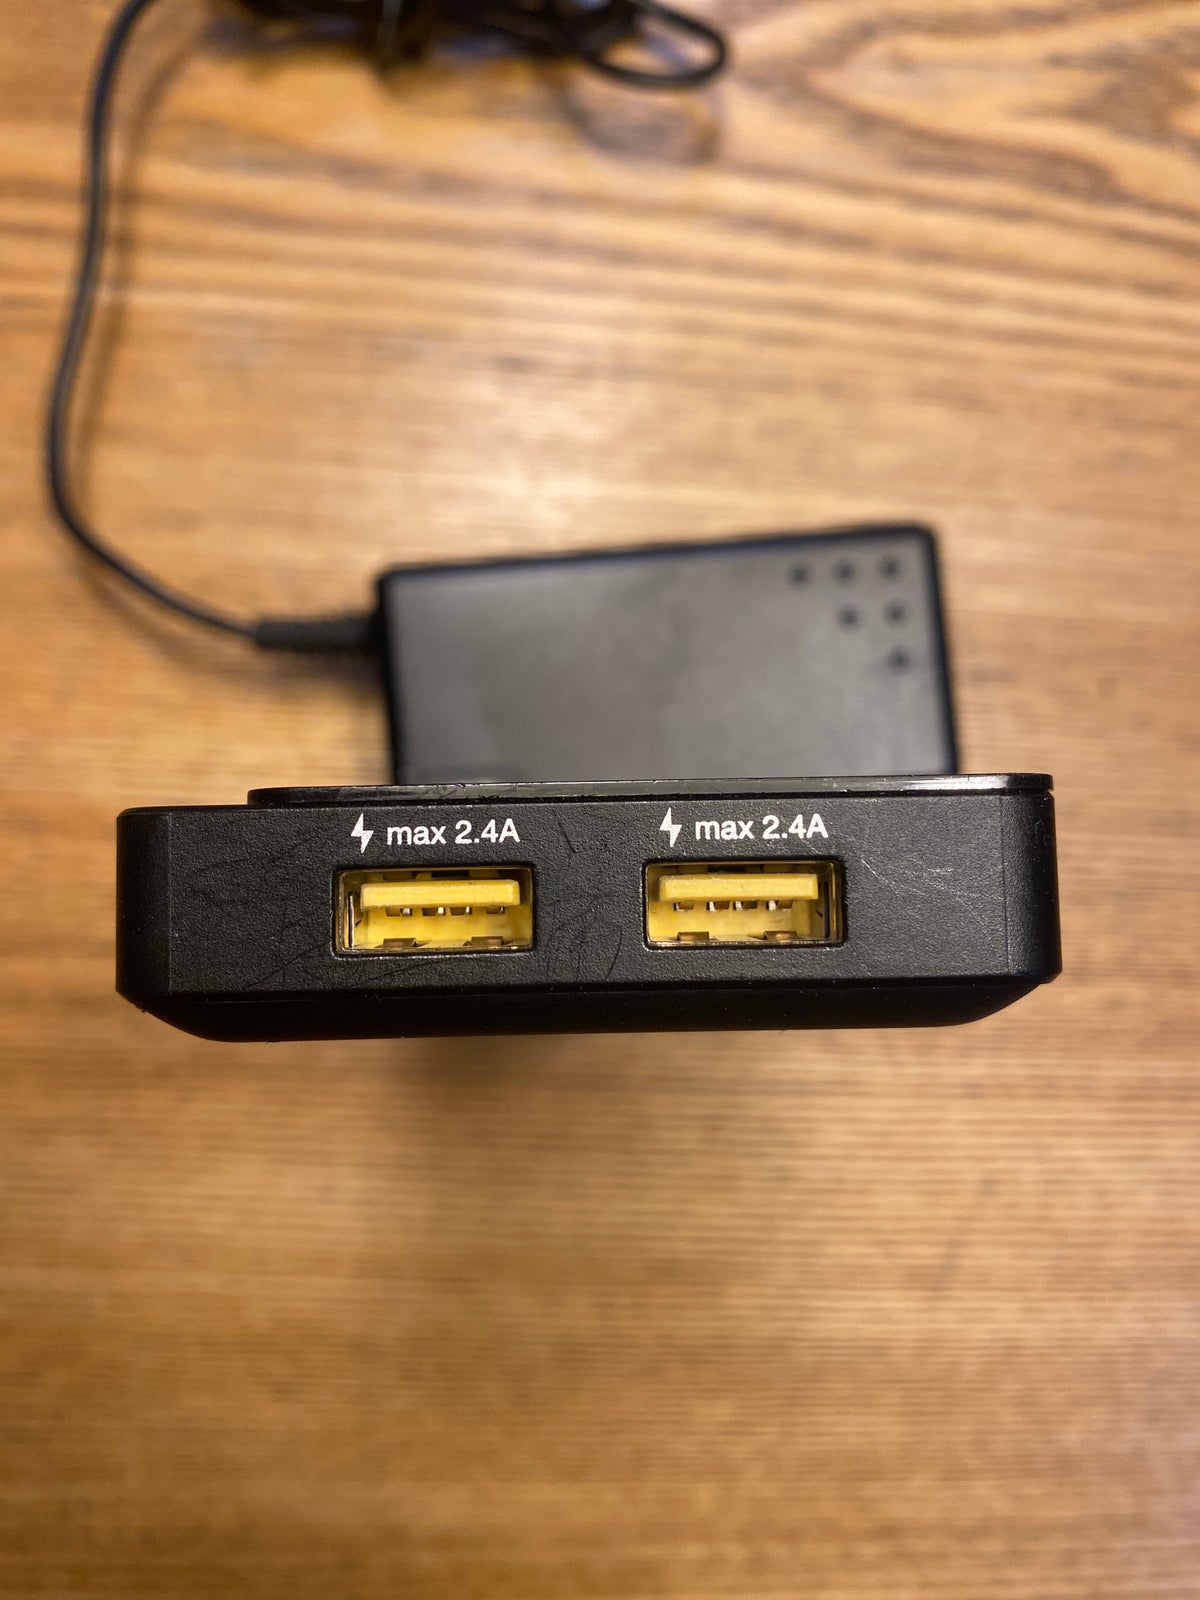 USB, TP-LINK, God